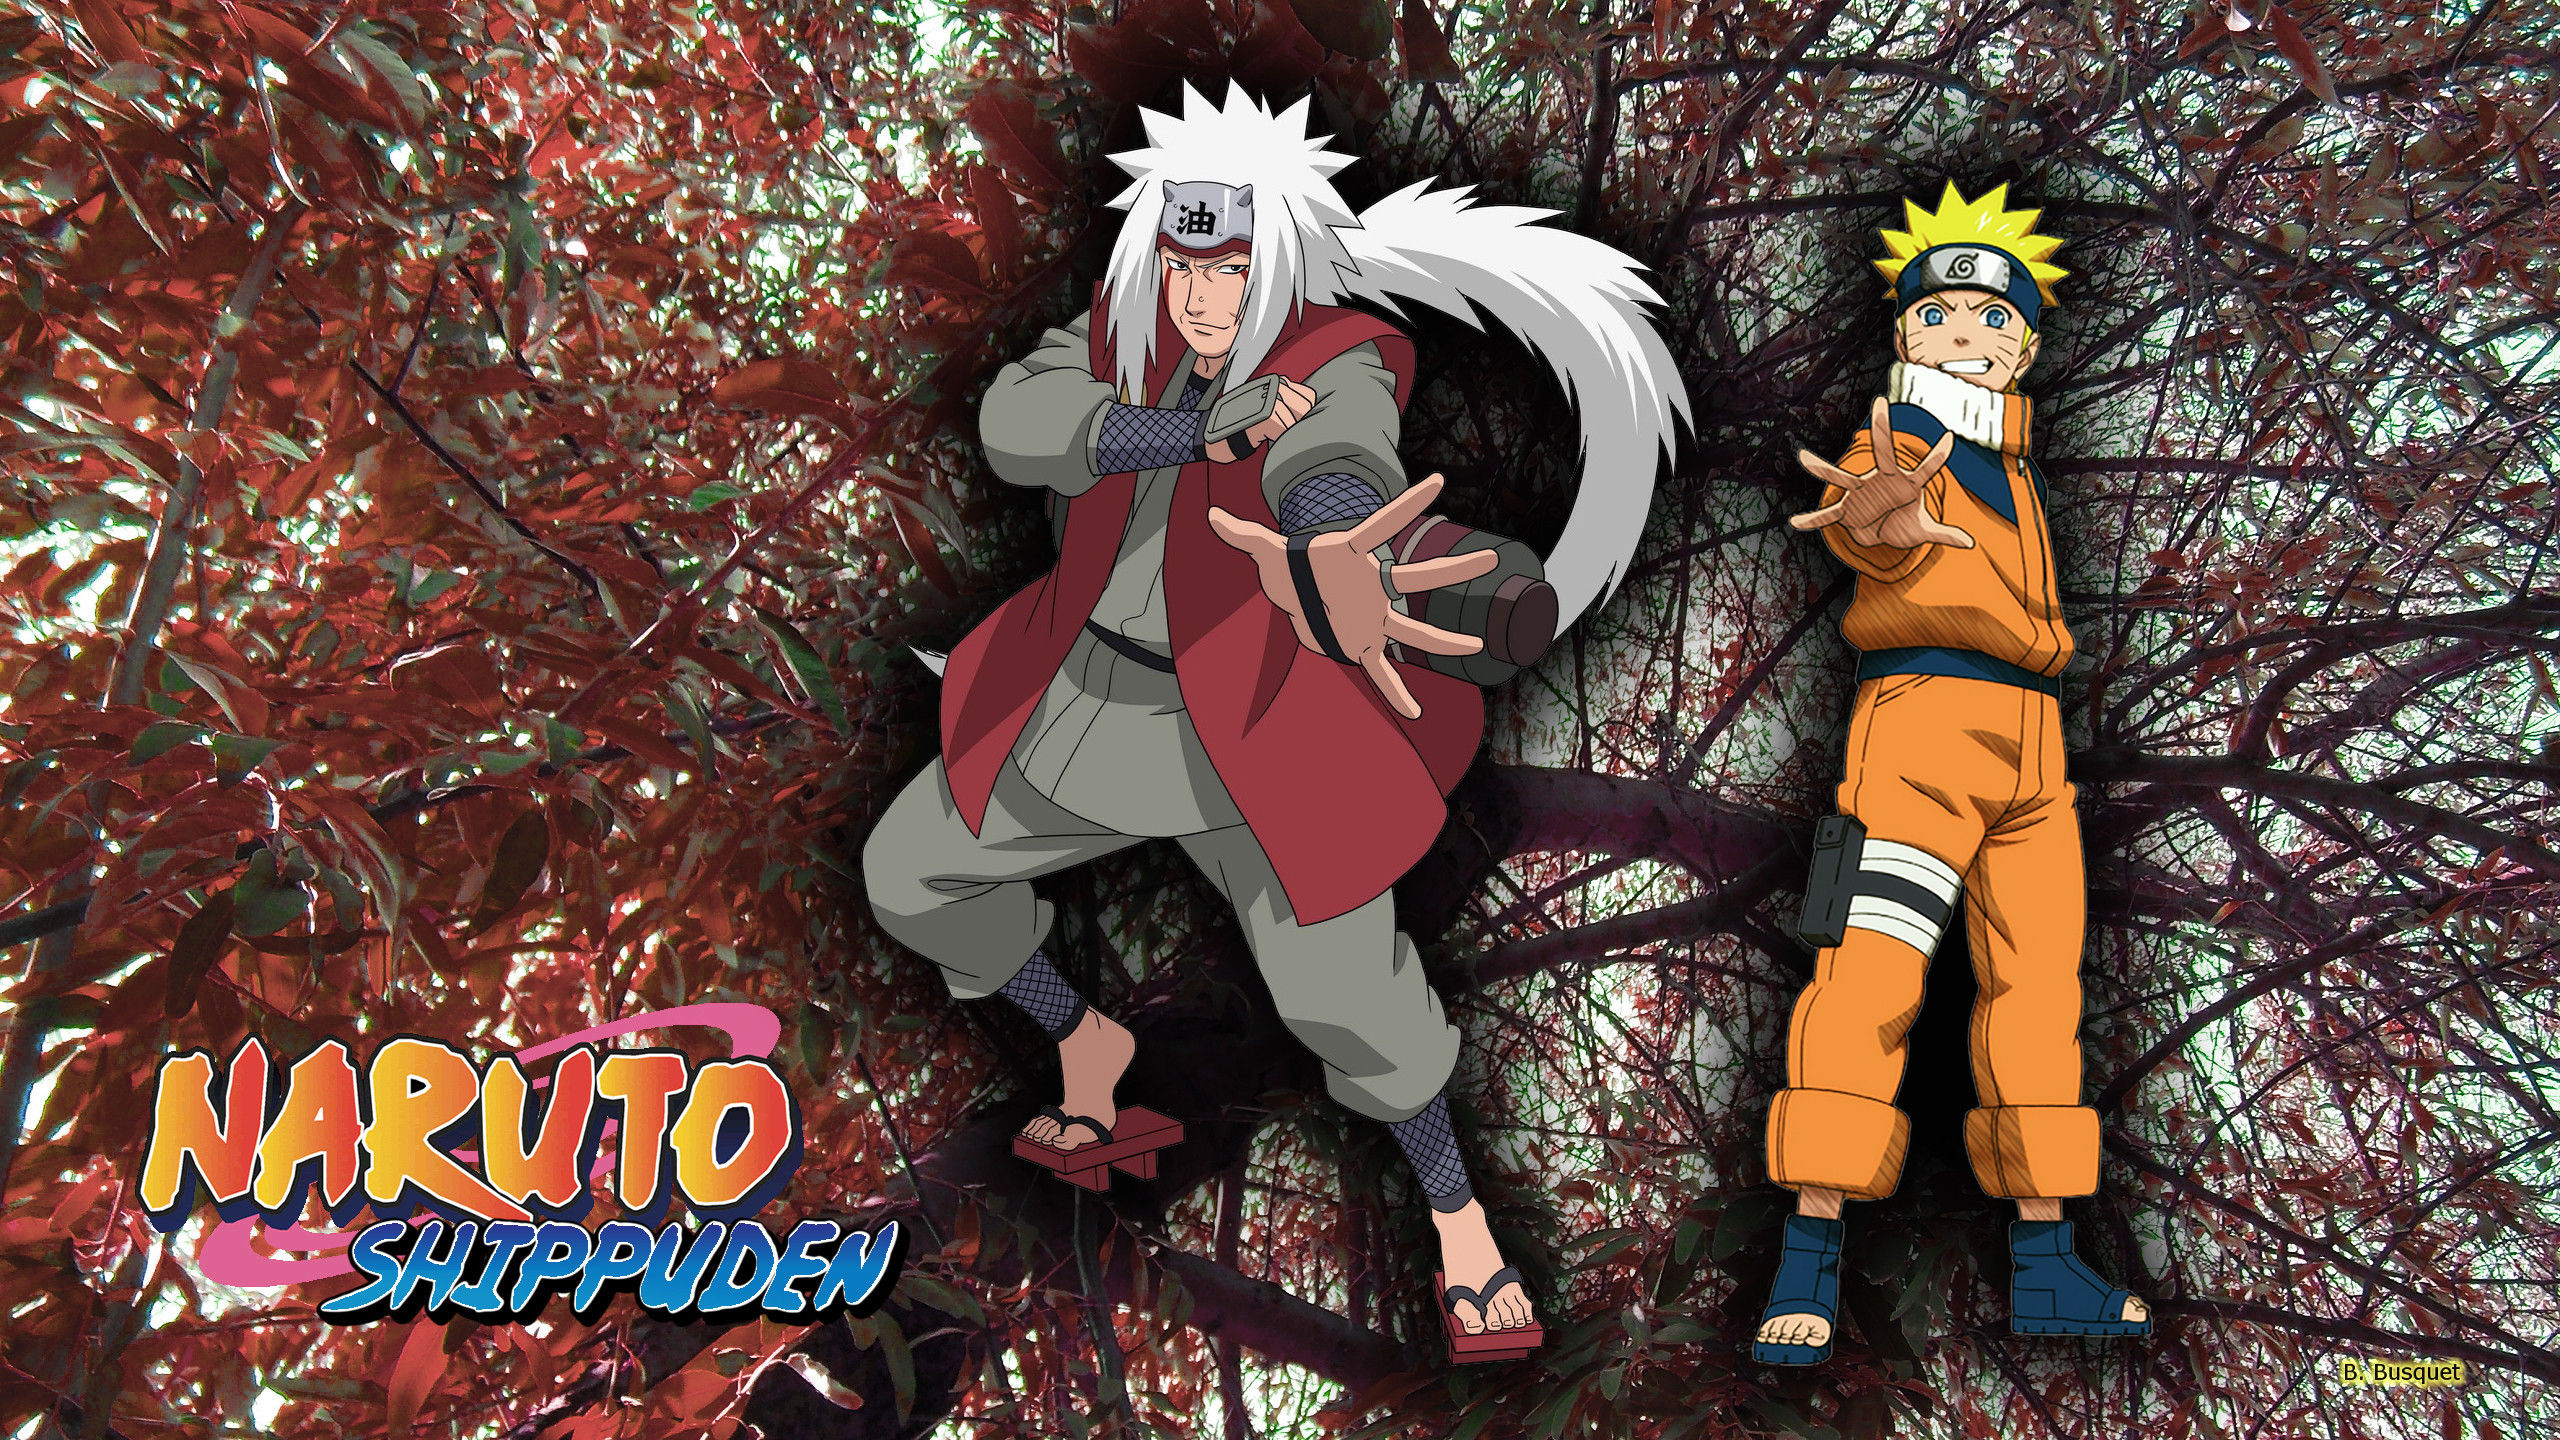 Naruto Shippuden Wallpaper With Jiraiya And Naruto 2560x1440